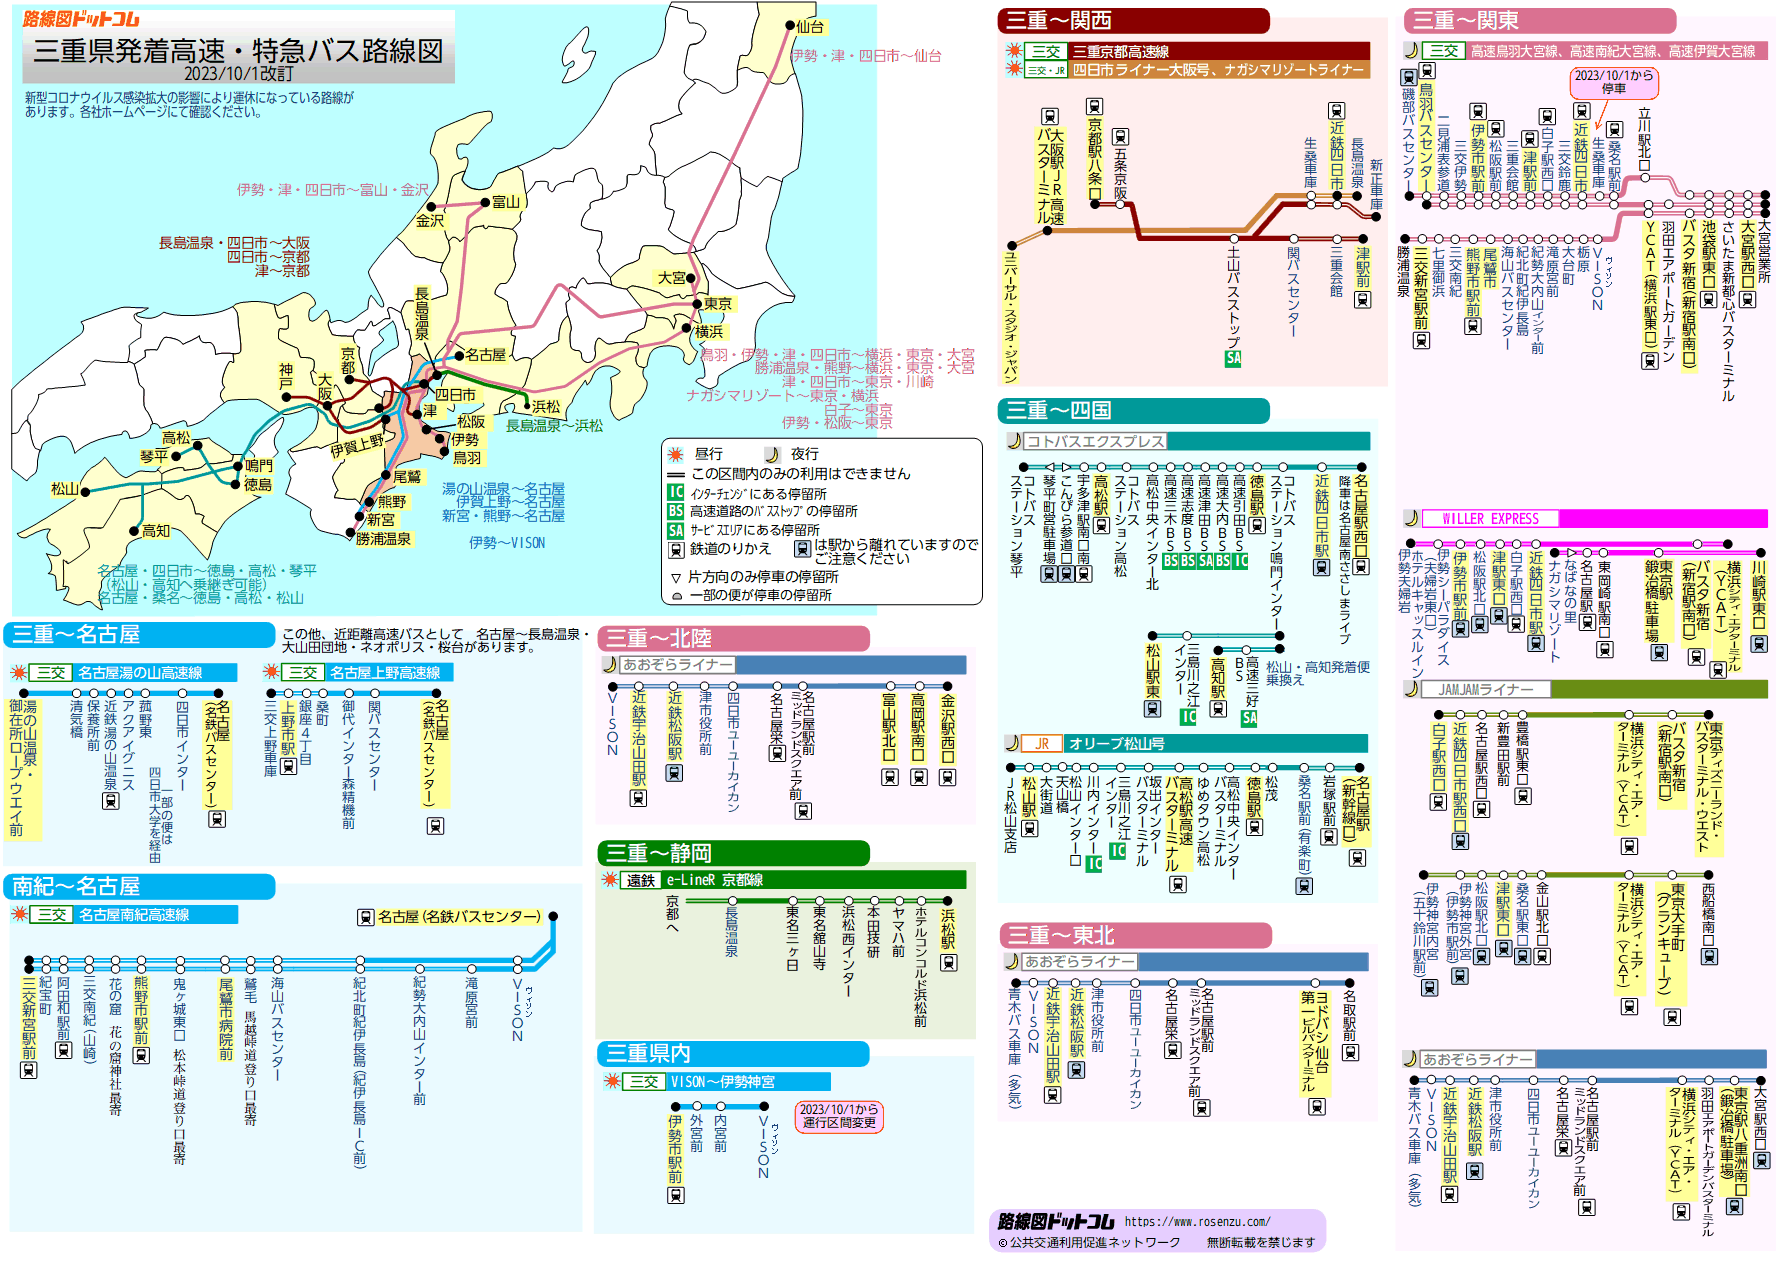 路線図ドットコム 高速バス 三重県発着高速バス 特急バス路線図